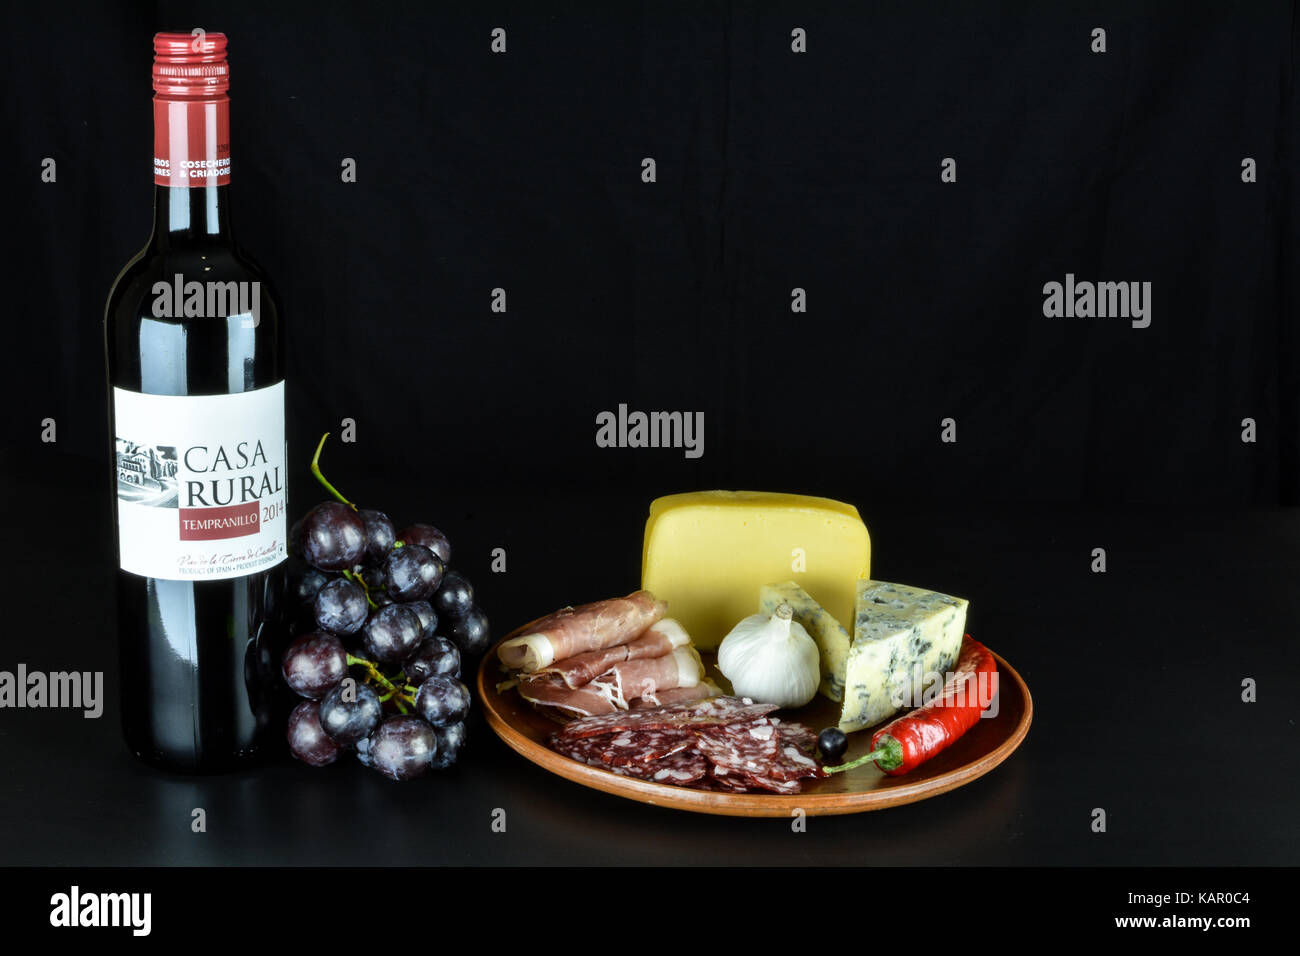 Primorskoe, Ukraine - 4 août 2016 : vin rouge espagnol de 2014 'casa rural' tempranillo' , un tas de raisins rouges, fromage bleu, proshto, de salami, de l'ail Banque D'Images